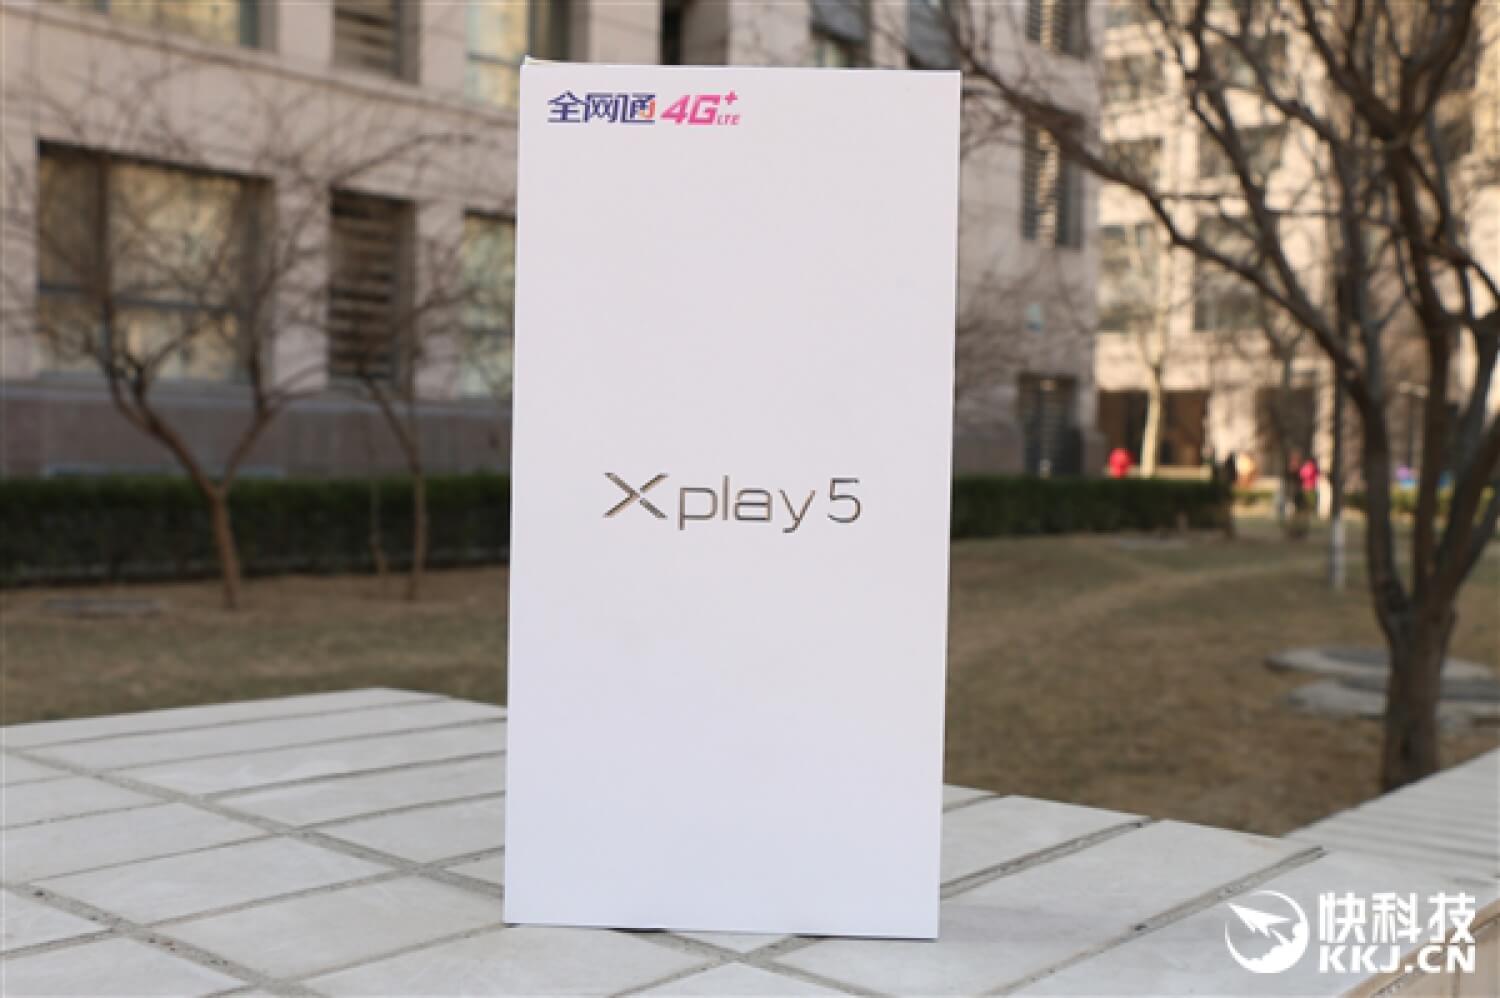 Фотографии телефона Xplay 5, с которого началась весна. Фото.